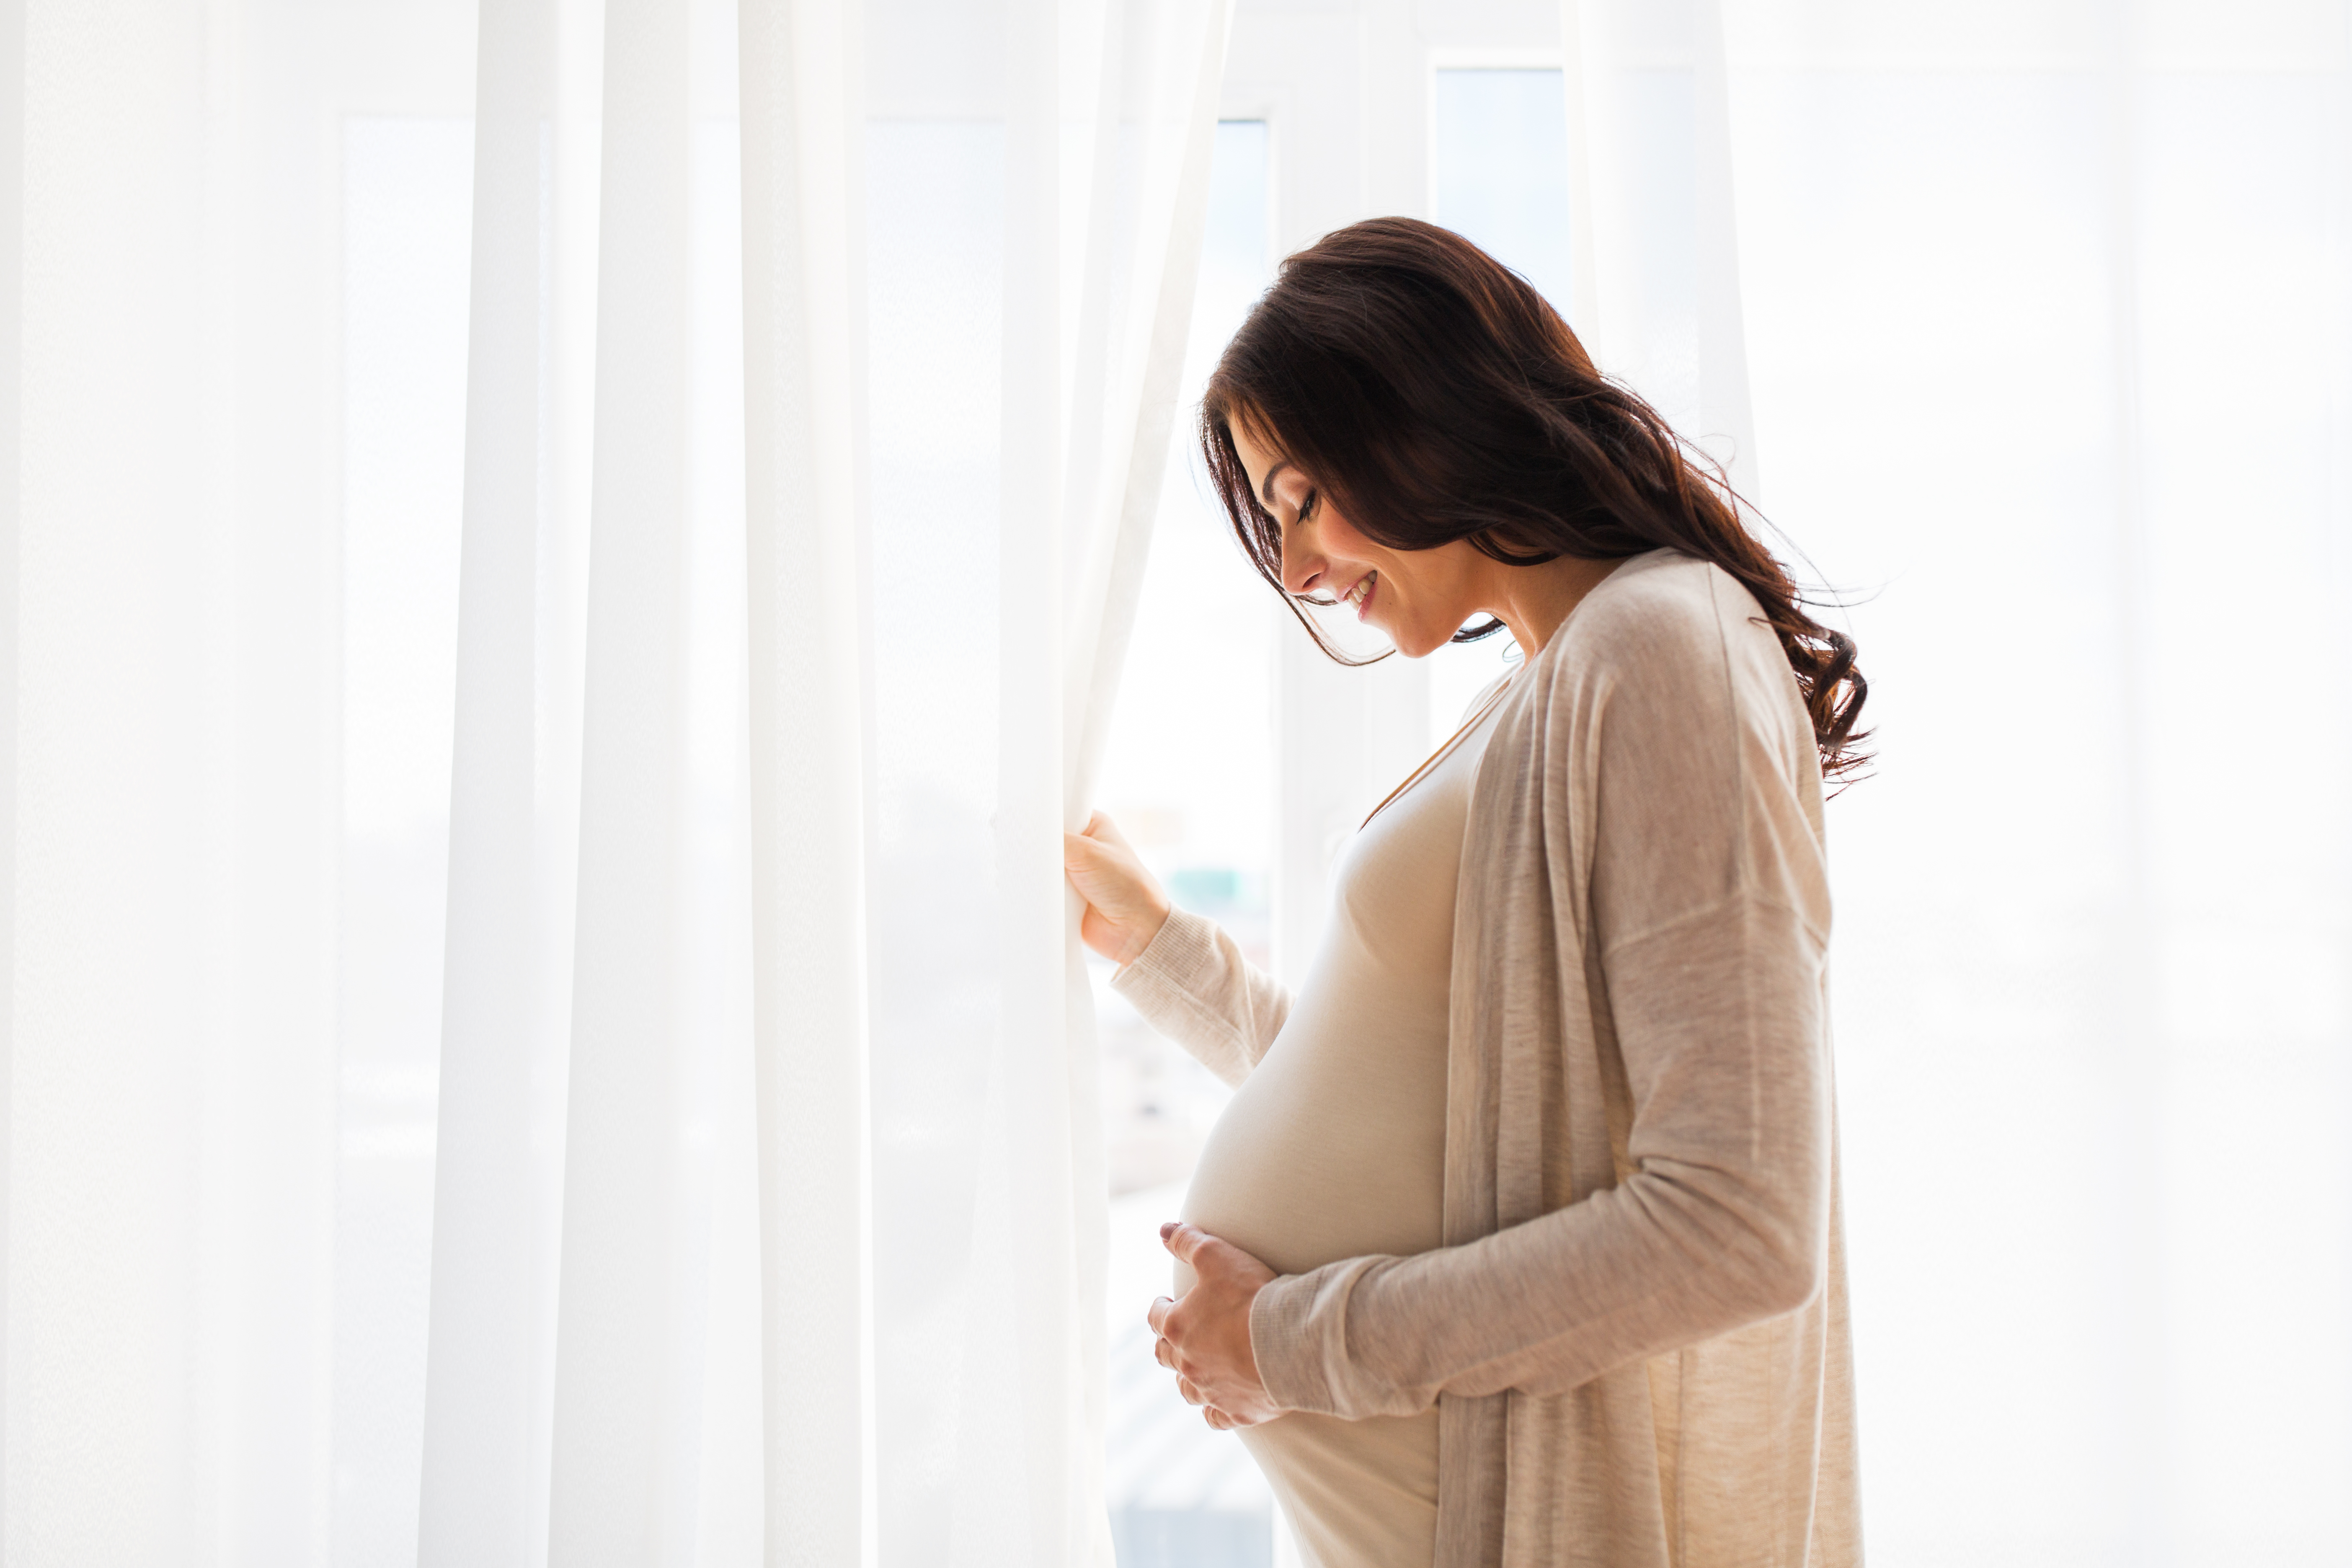 Una mujer embarazada cerca de una ventana | Foto: Shutterstock